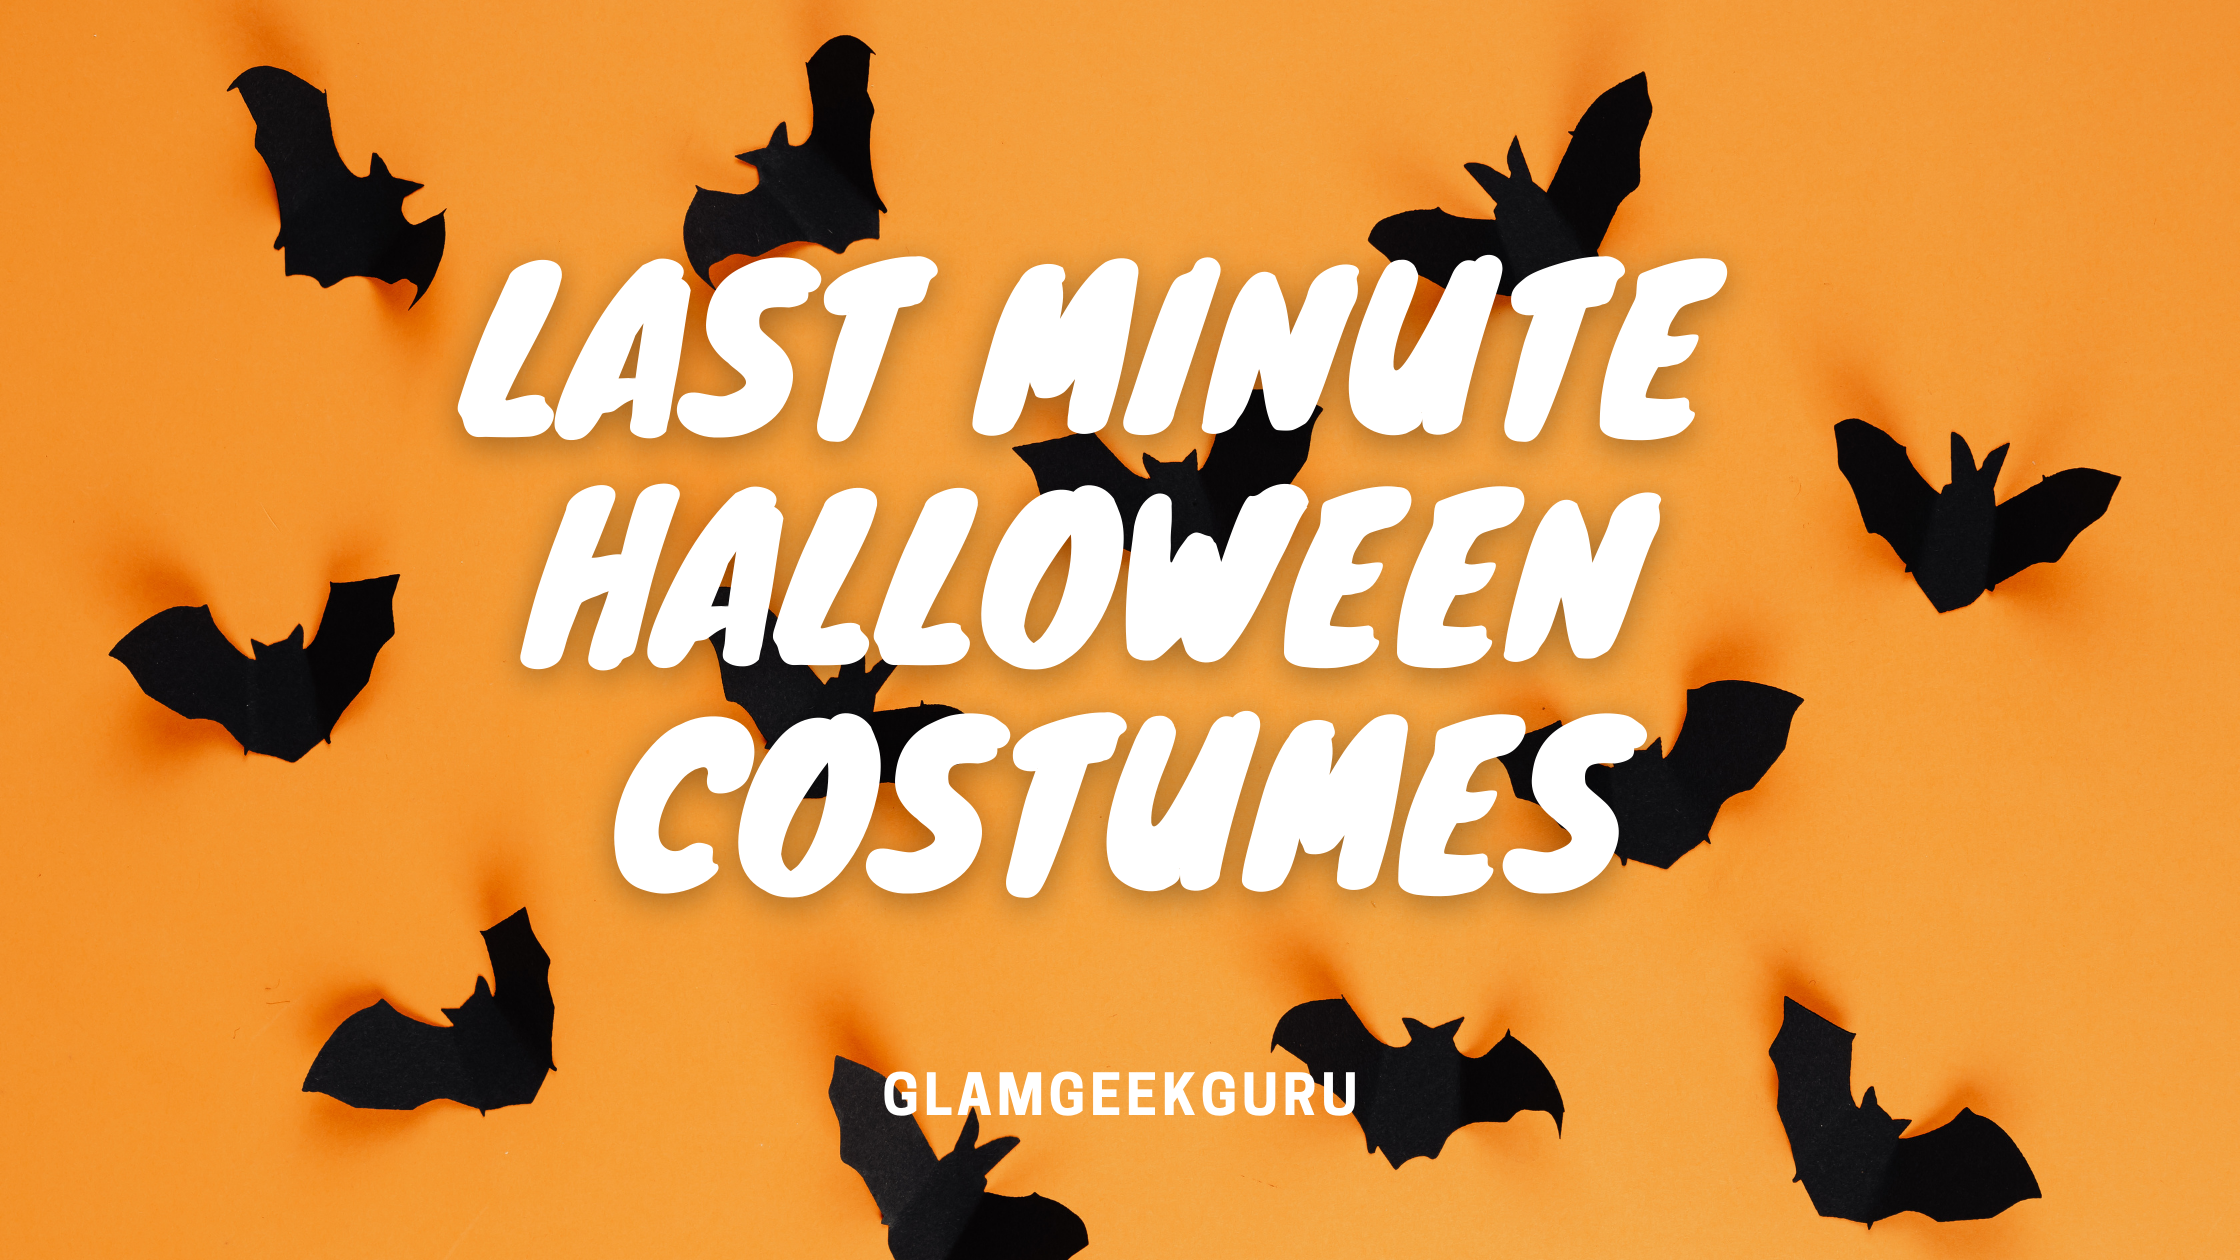 Last minute halloween costumes